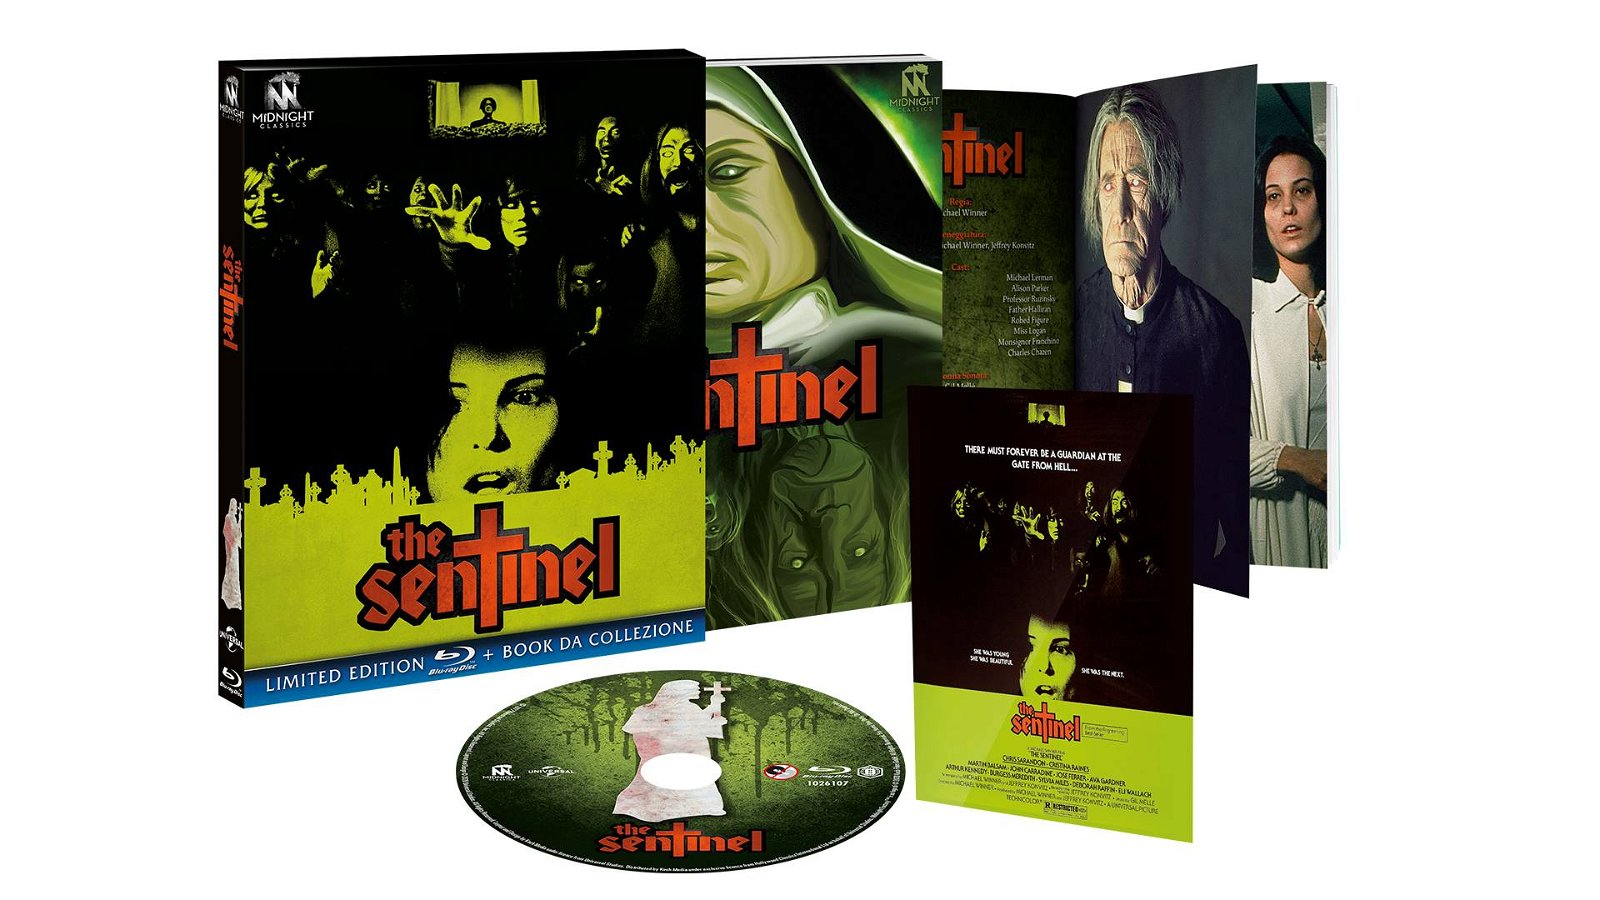 Immagine di The Sentinel: disponibile in DVD e Blu-Ray su Amazon in edizione limitata e numerata